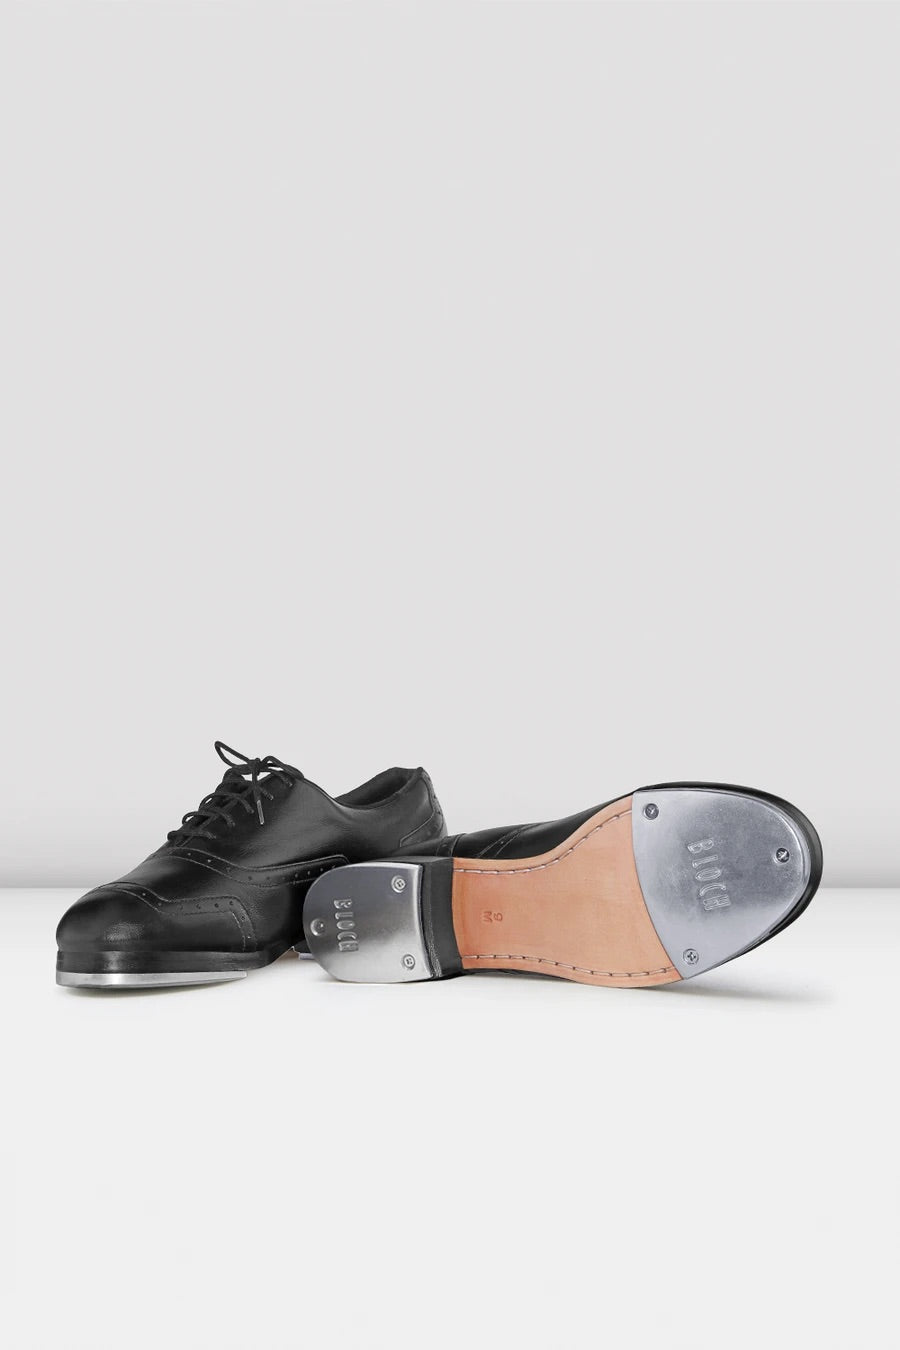 Jason Samuel Smith Black Leather Tap Shoes S0313M